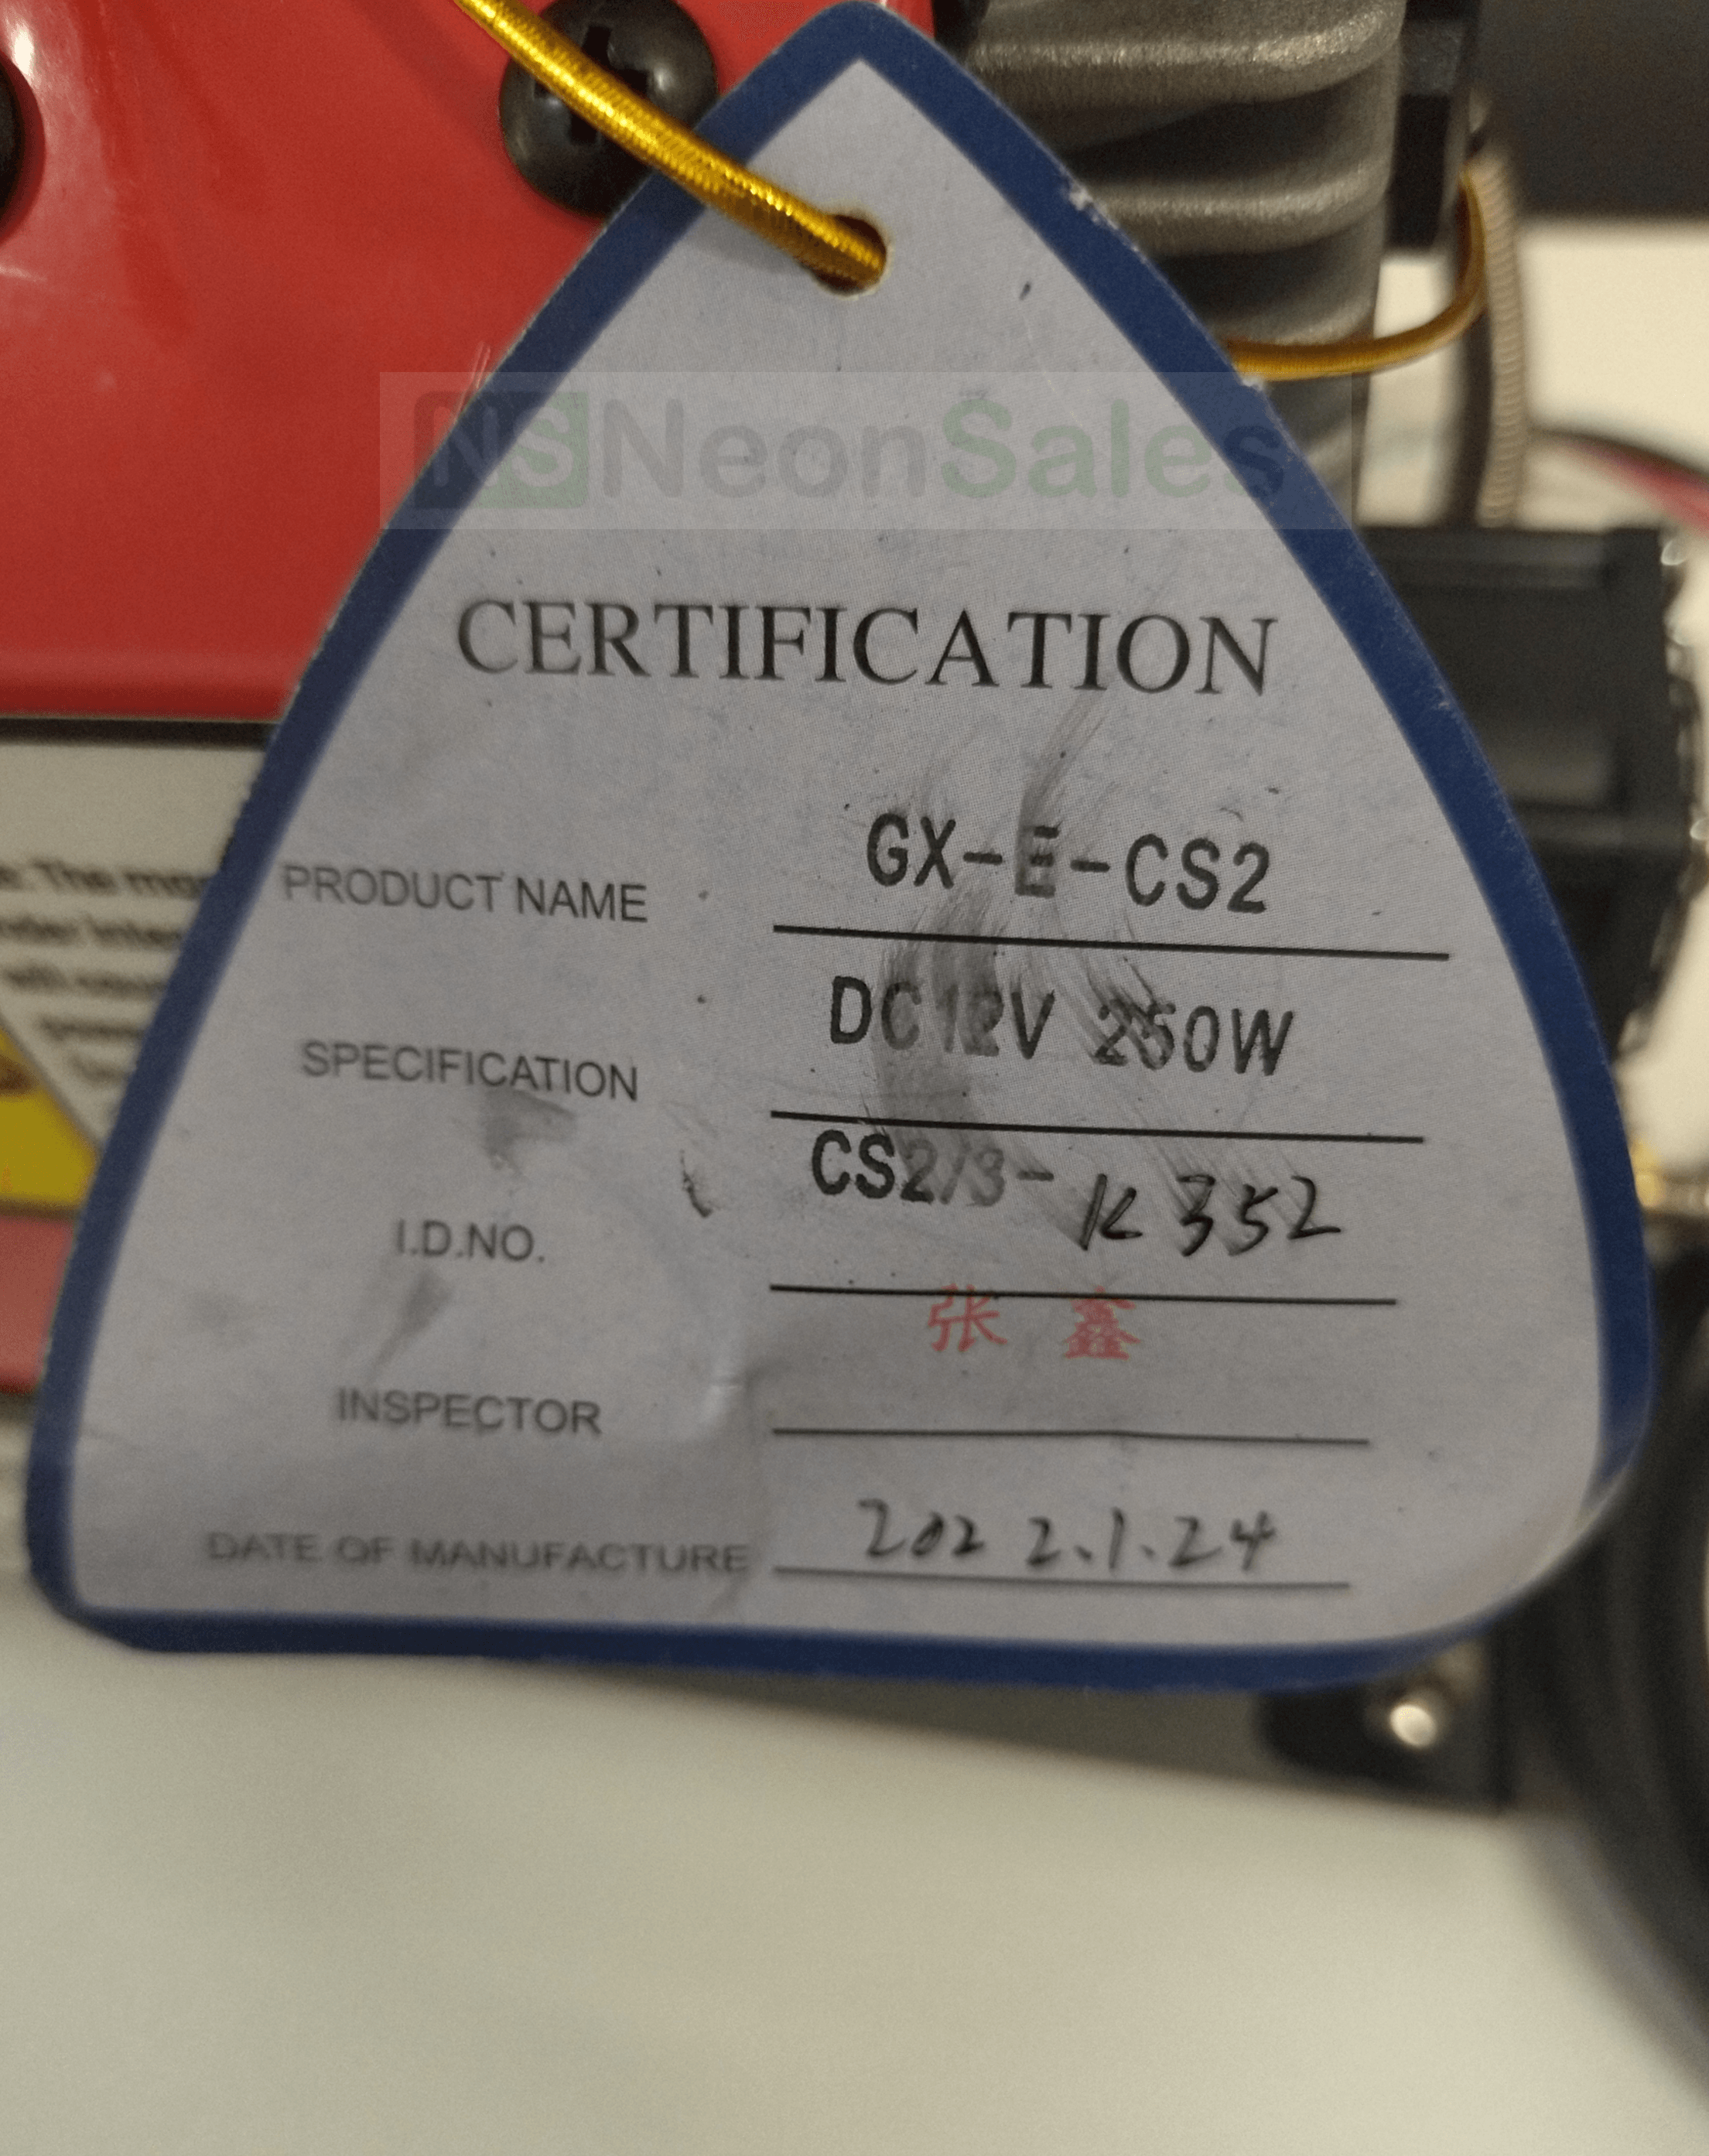 GX RED 4500 PSI PCP COMPRESSOR, 12V/220V - NeonSales